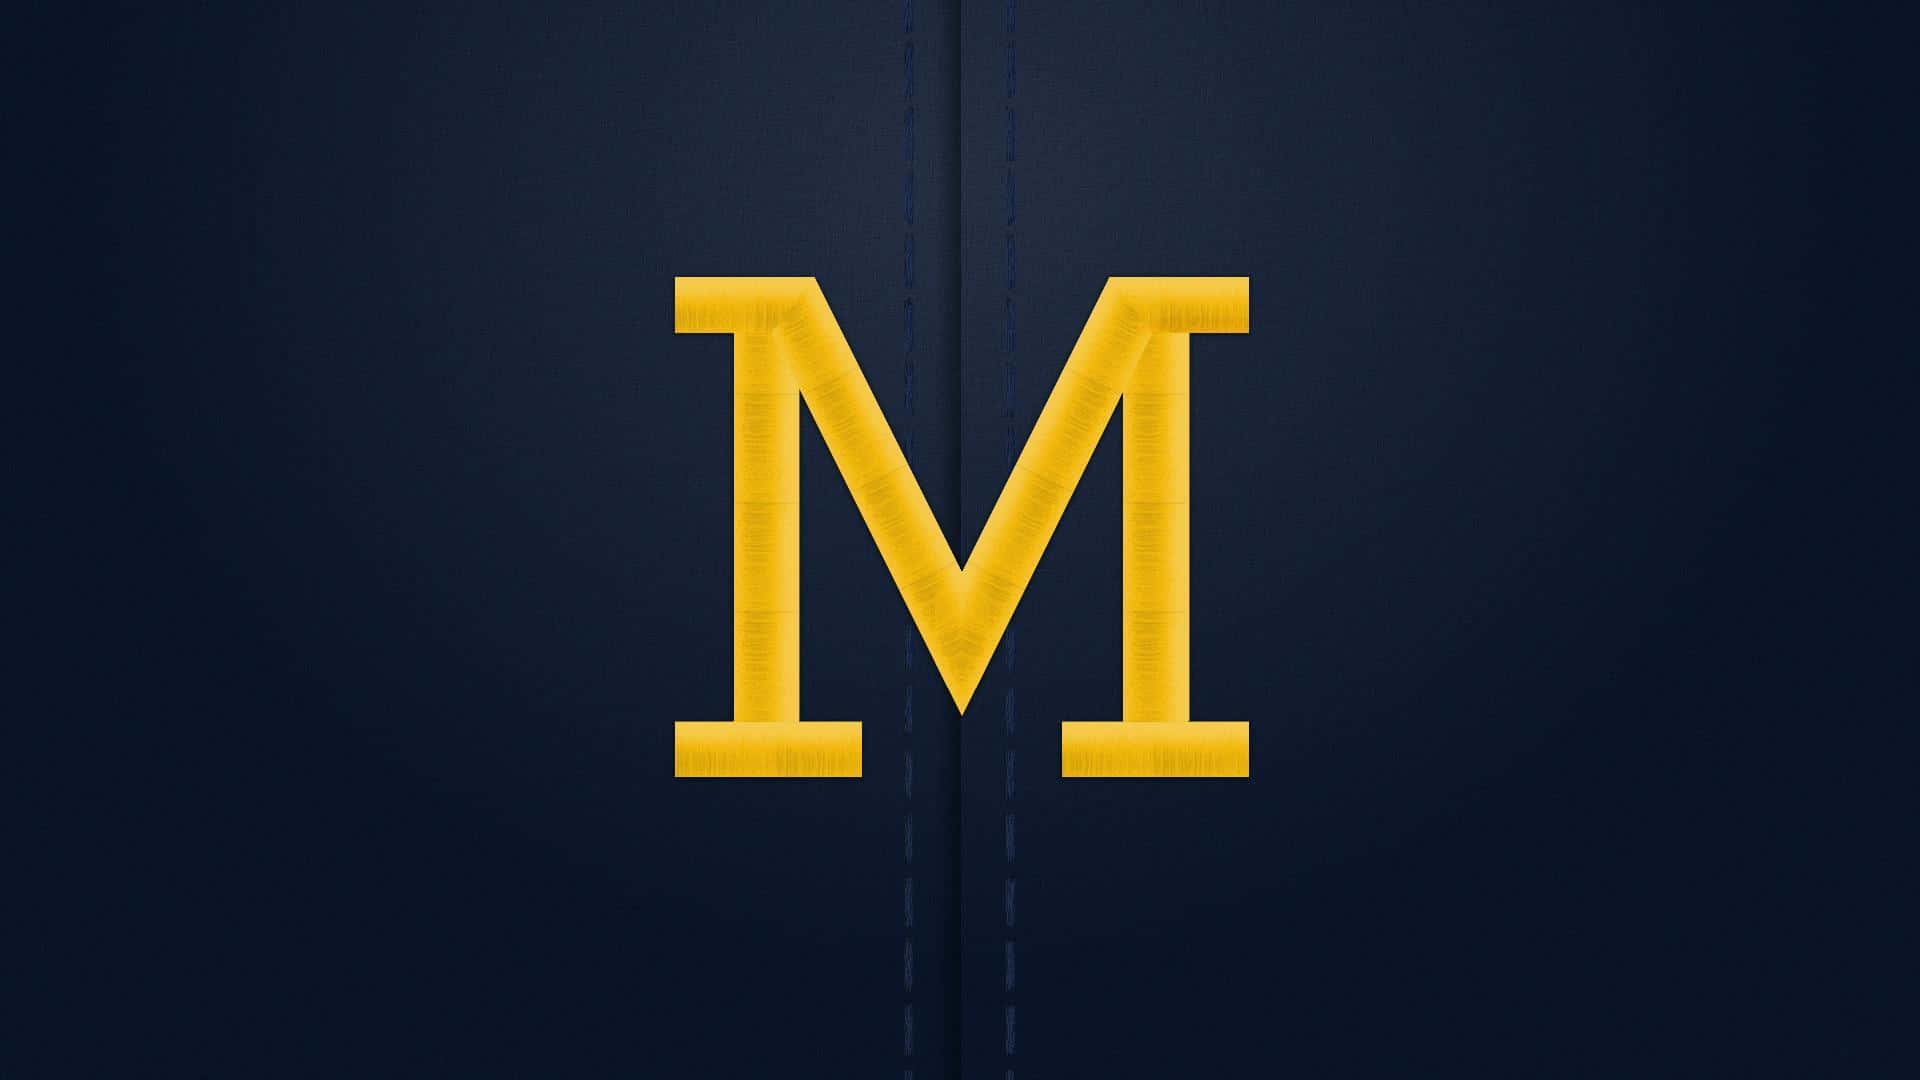 Logotipominimalista Del Equipo De Fútbol De Michigan. Fondo de pantalla